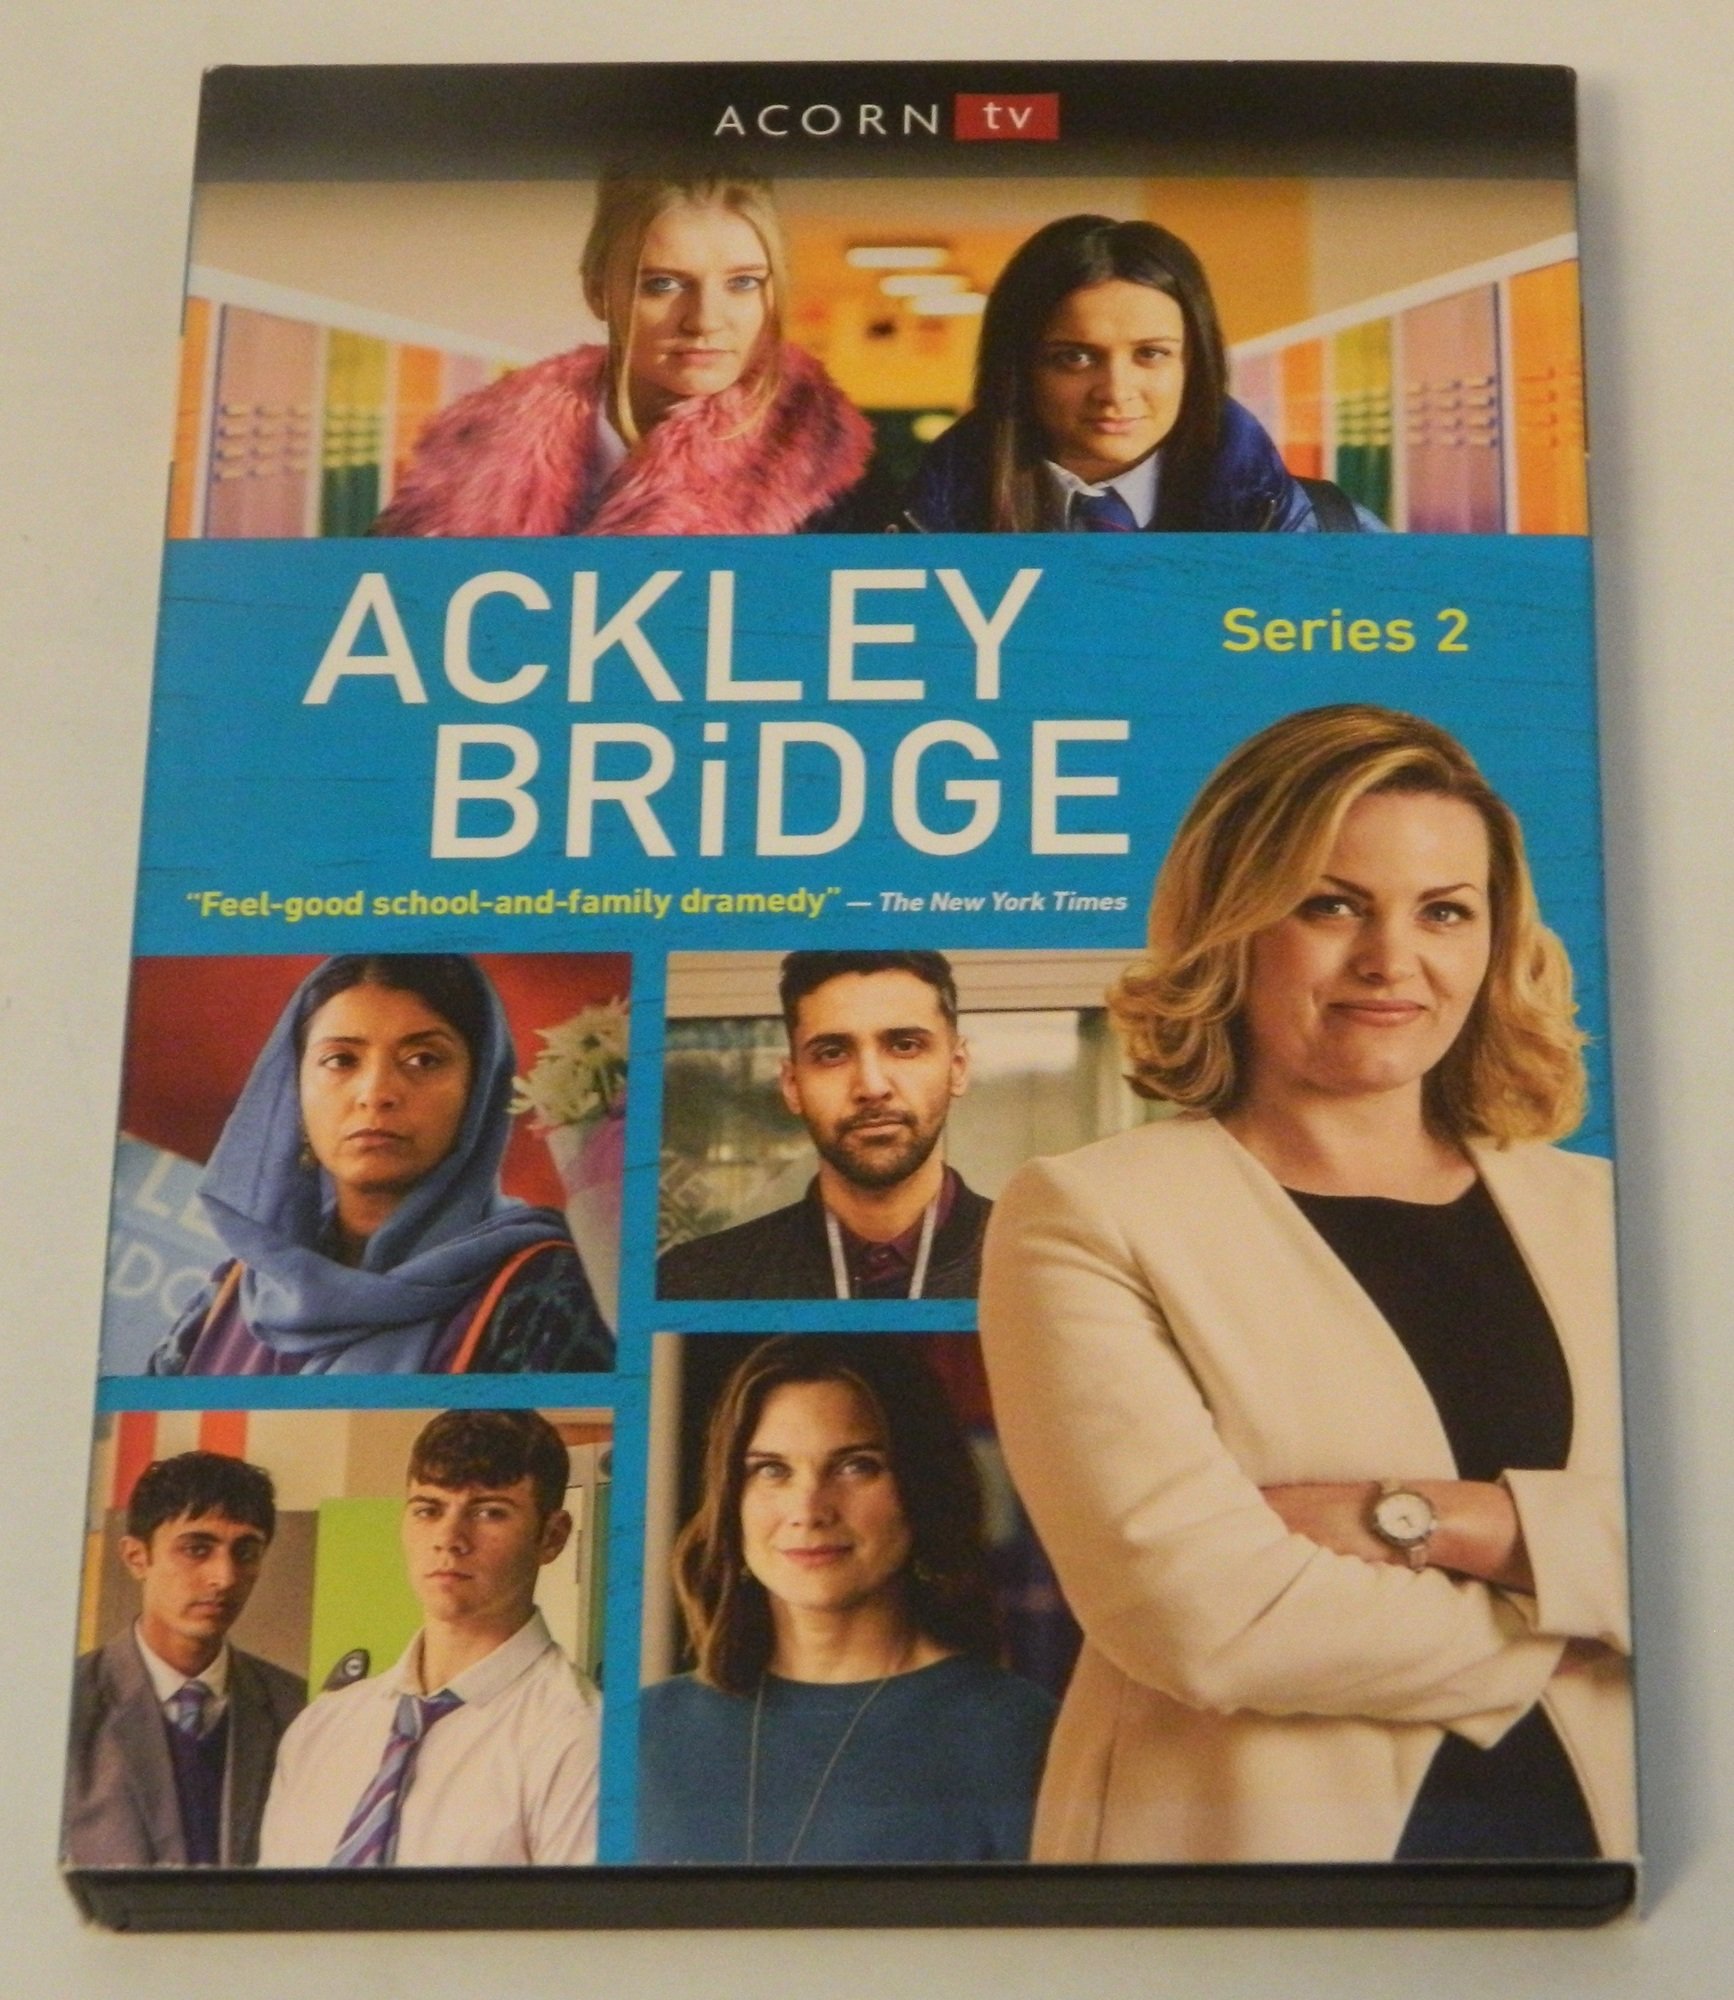 Ackley Bridge: Series 2 DVD Review